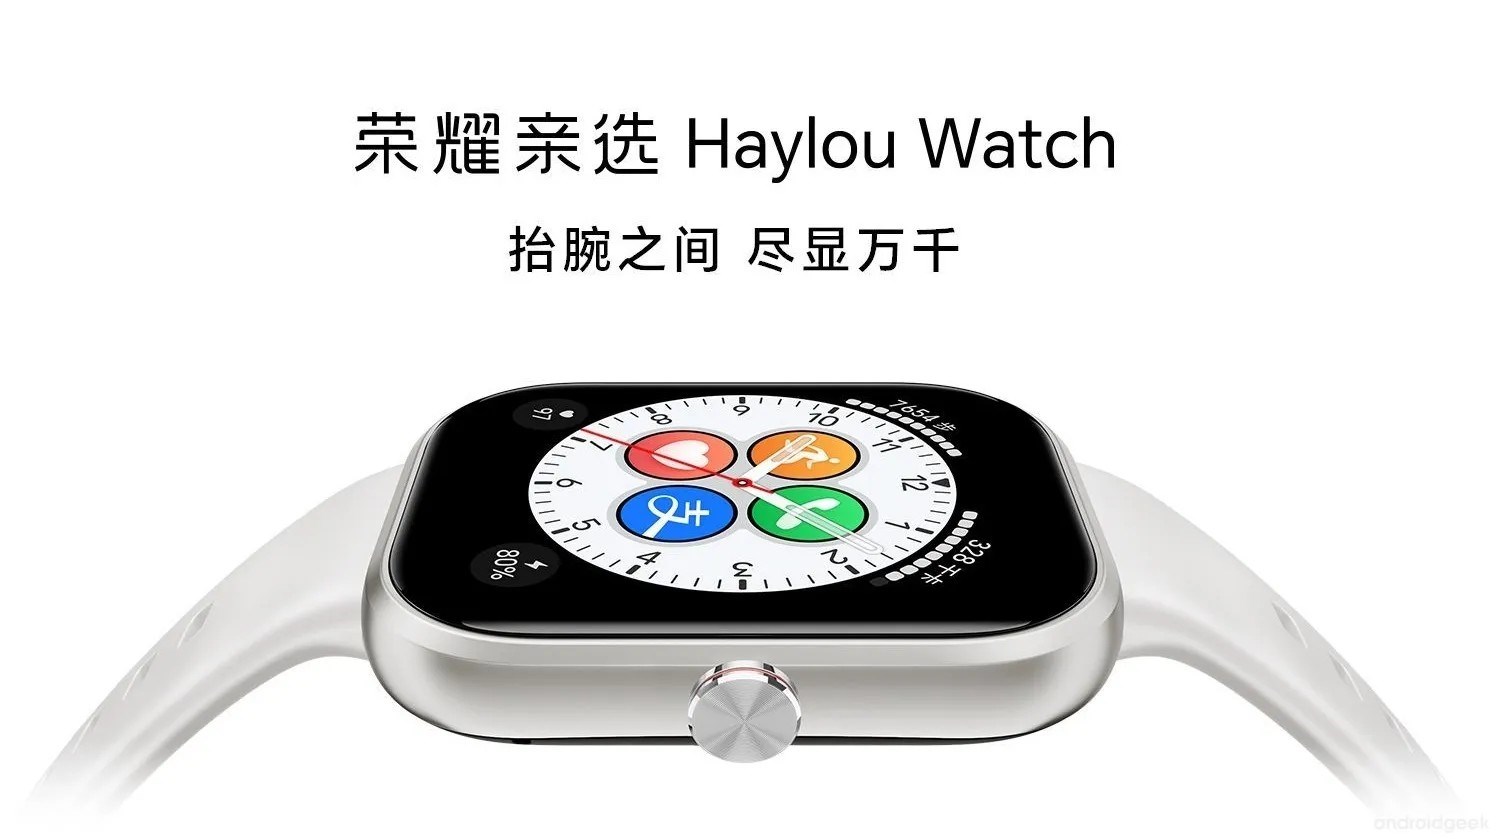 Honor Haylou Watch tanıtıldı: İşte özellikleri ve fiyatı